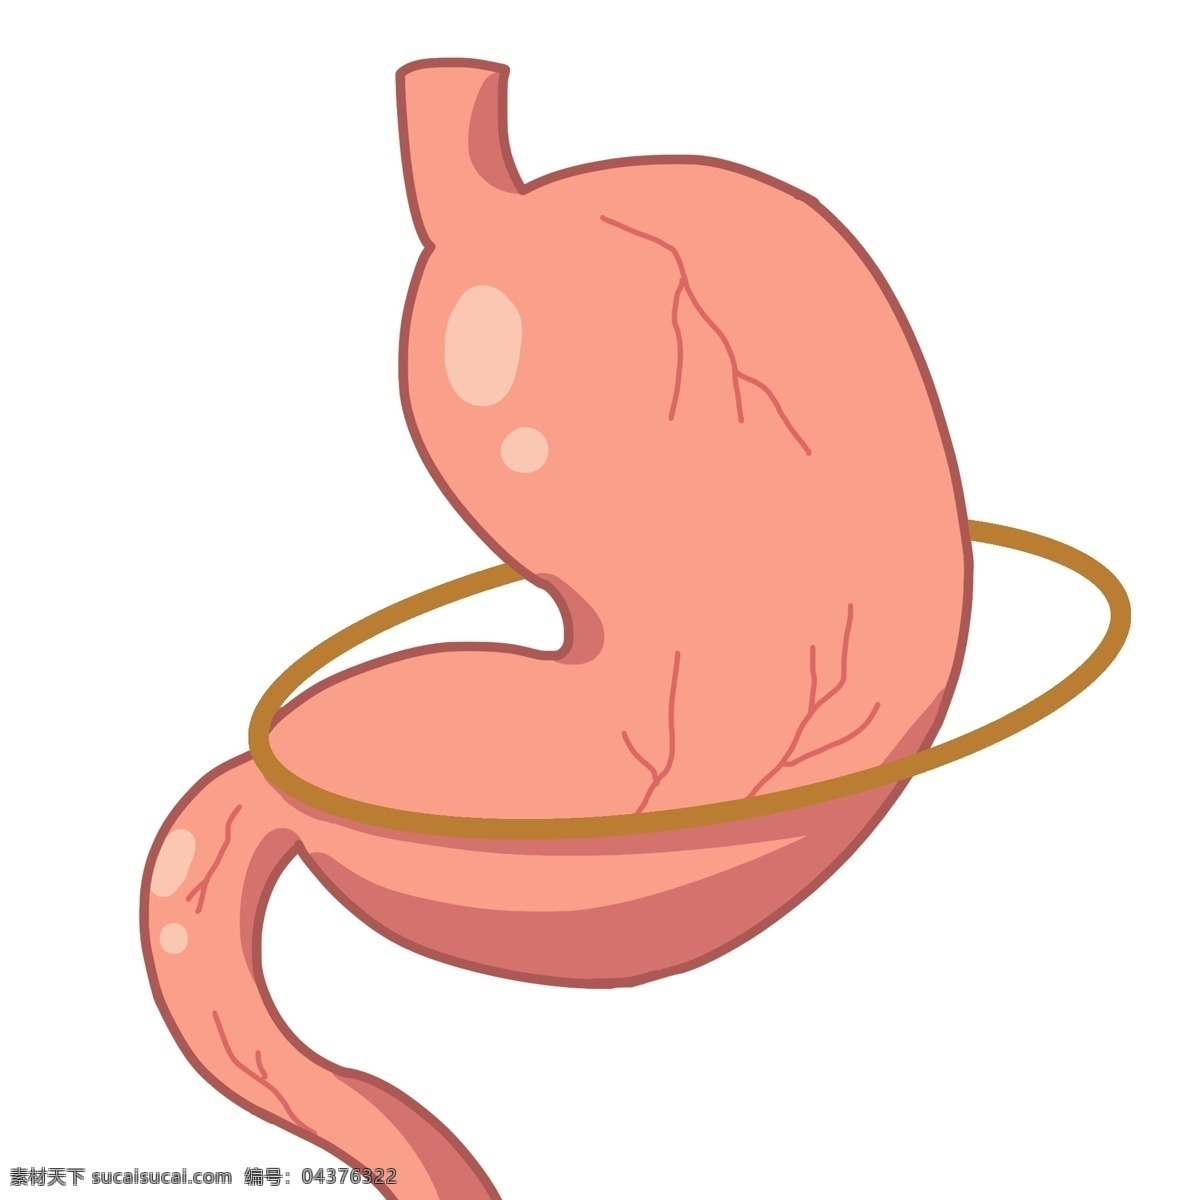 粉红色 胃部 装饰 插画 粉红色的胃部 人体器官 健康的器官 身体器官 毛细血管 医学 内脏 卡通插画